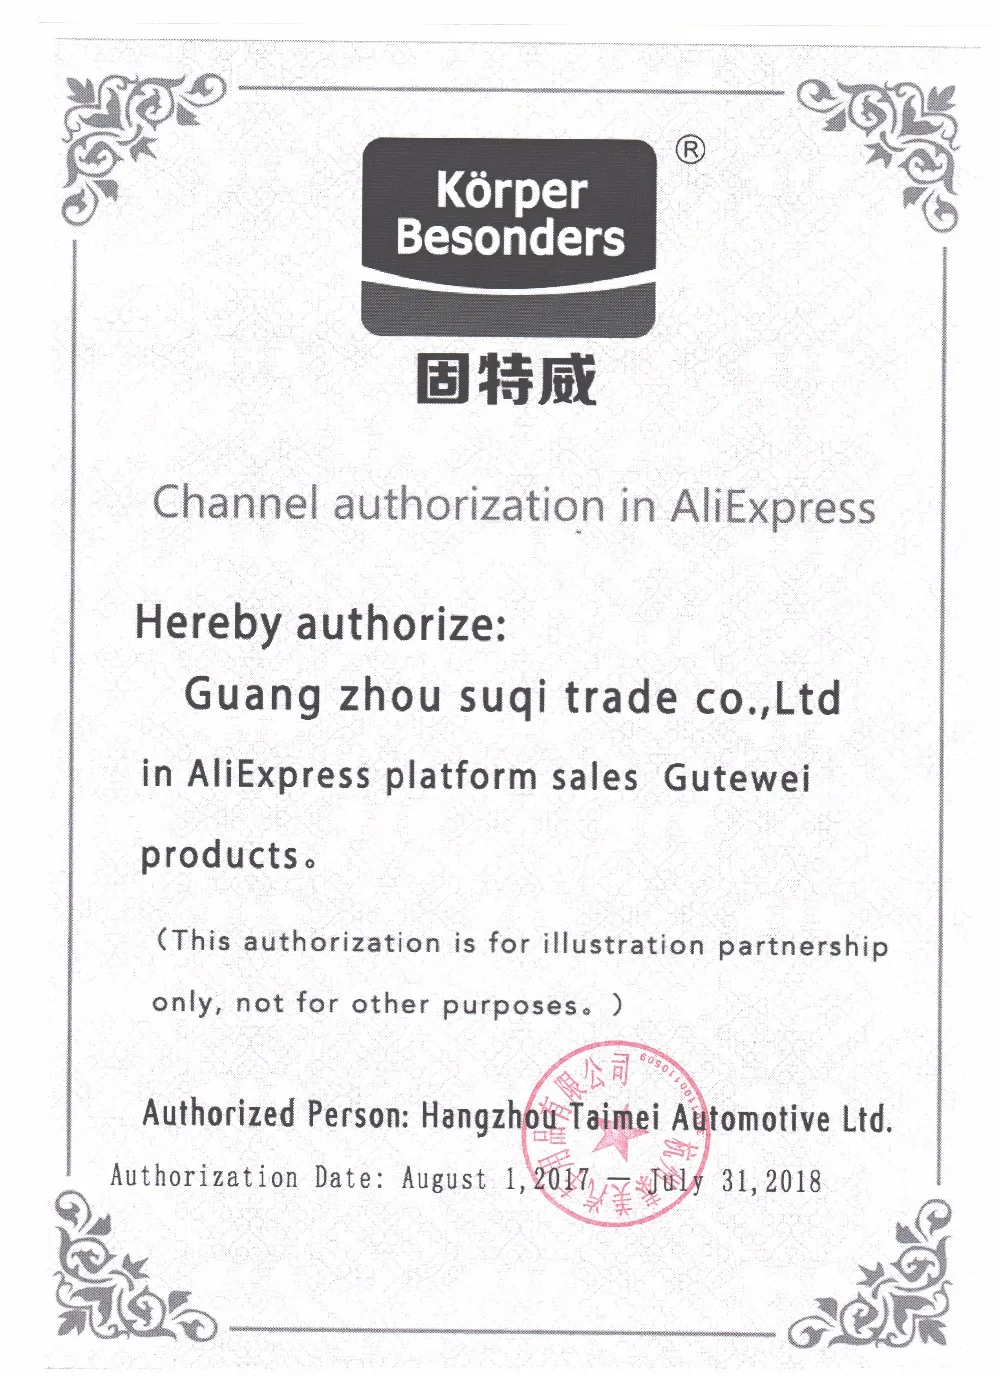 Guang zhou suqi trade co.,Ltd